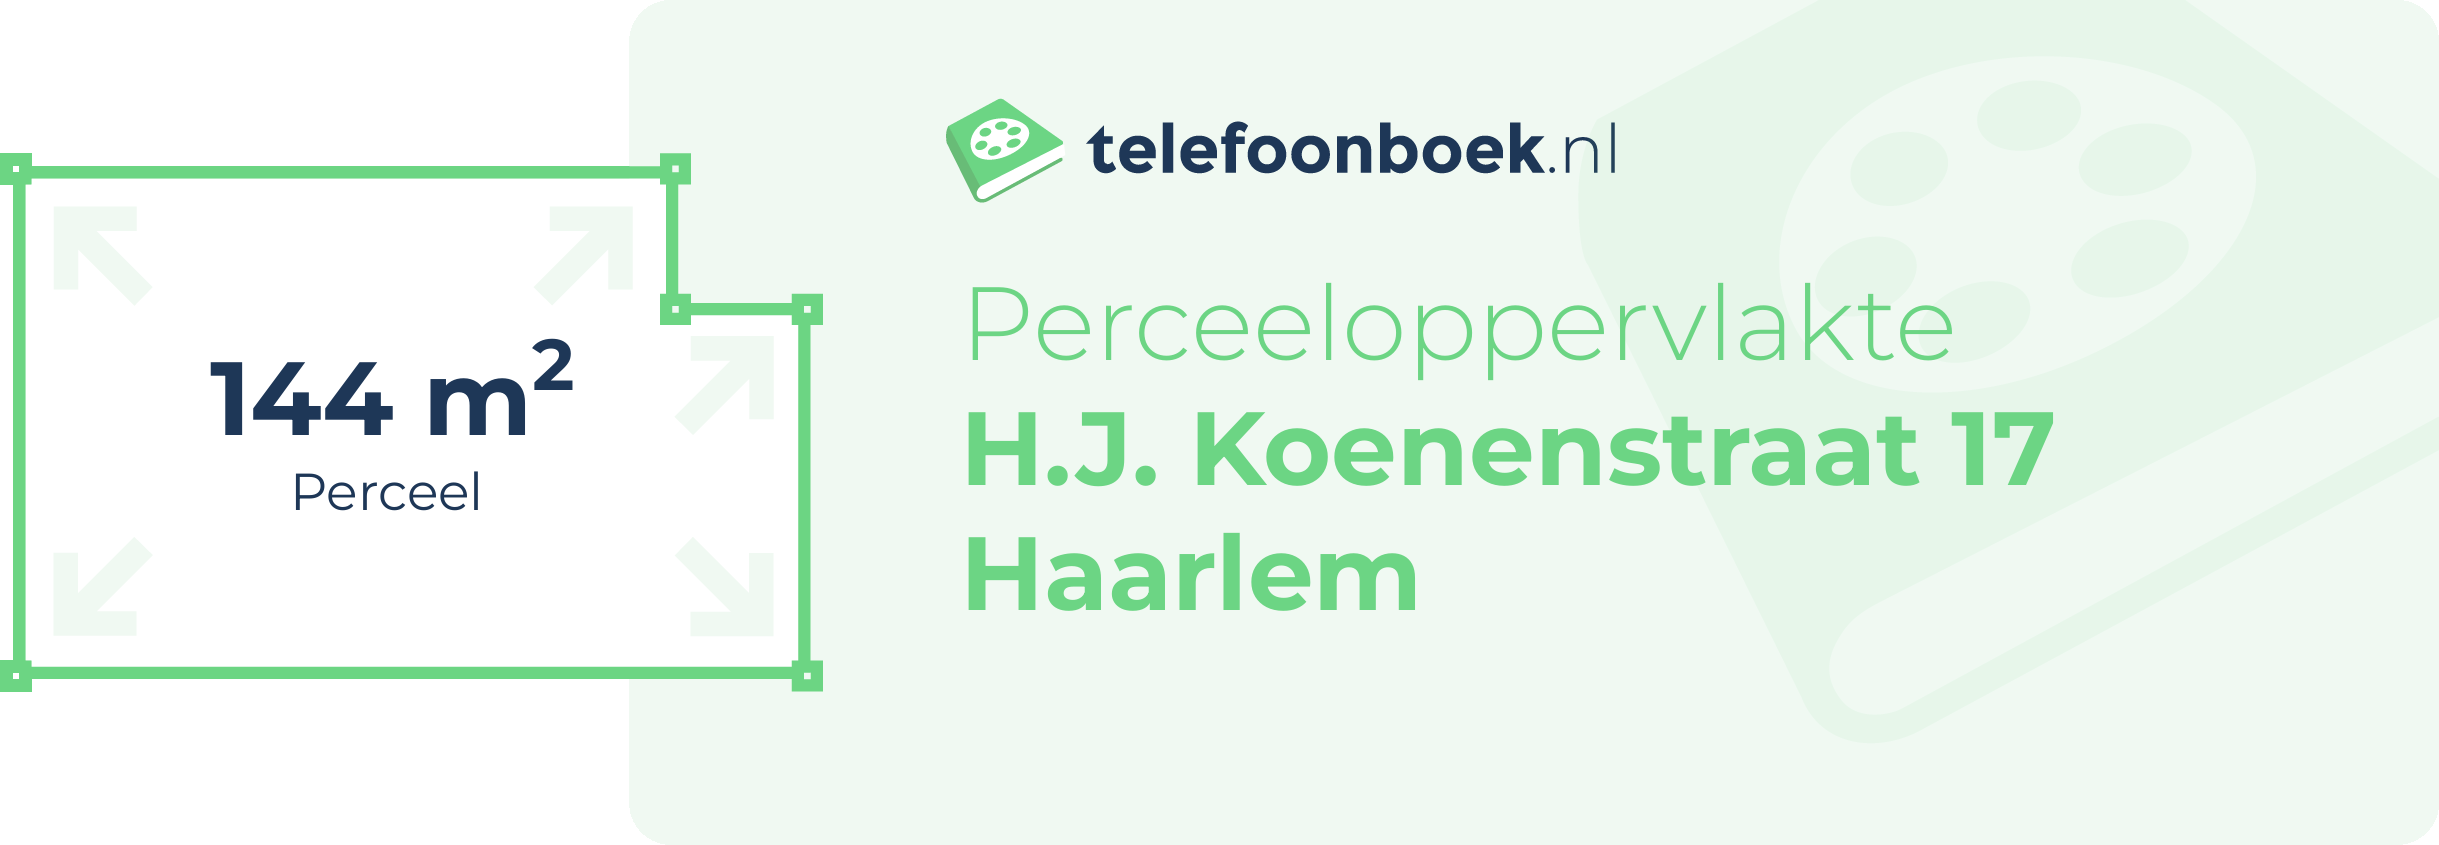 Perceeloppervlakte H.J. Koenenstraat 17 Haarlem